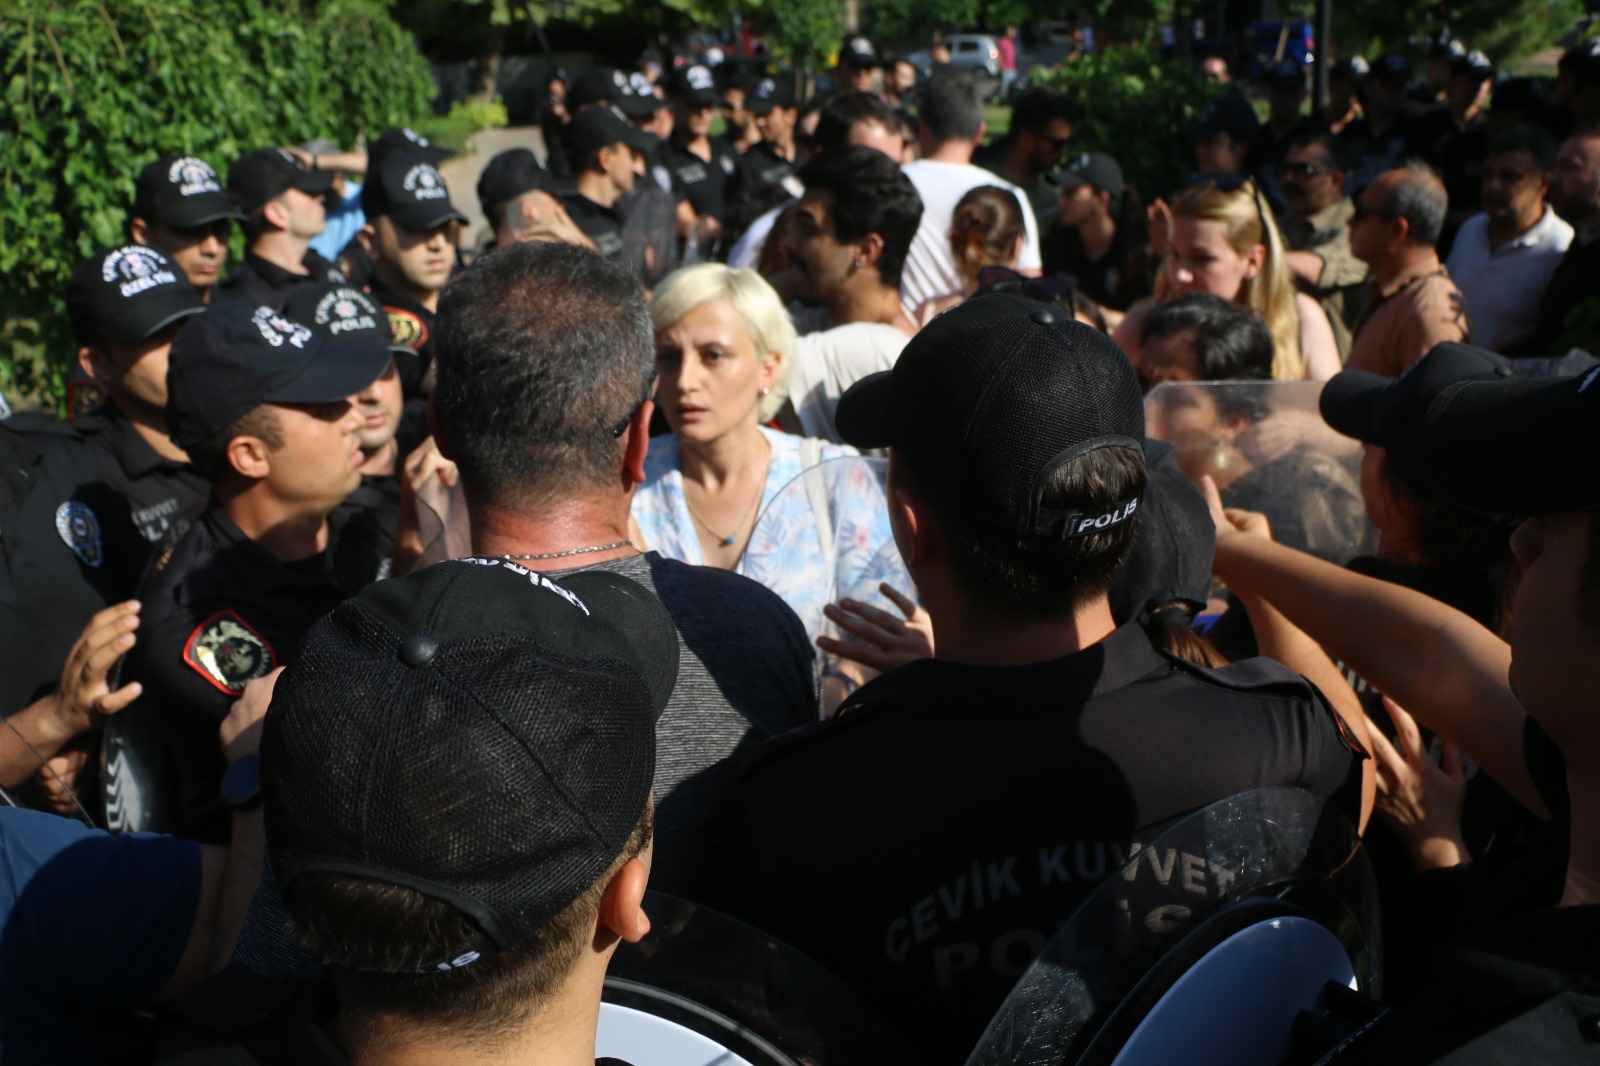 Adana Onur Yürüyüşü’nde gözaltına alınan avukatlar suç duyurusunda bulundu | Kaos GL - LGBTİ+ Haber Portalı Haber